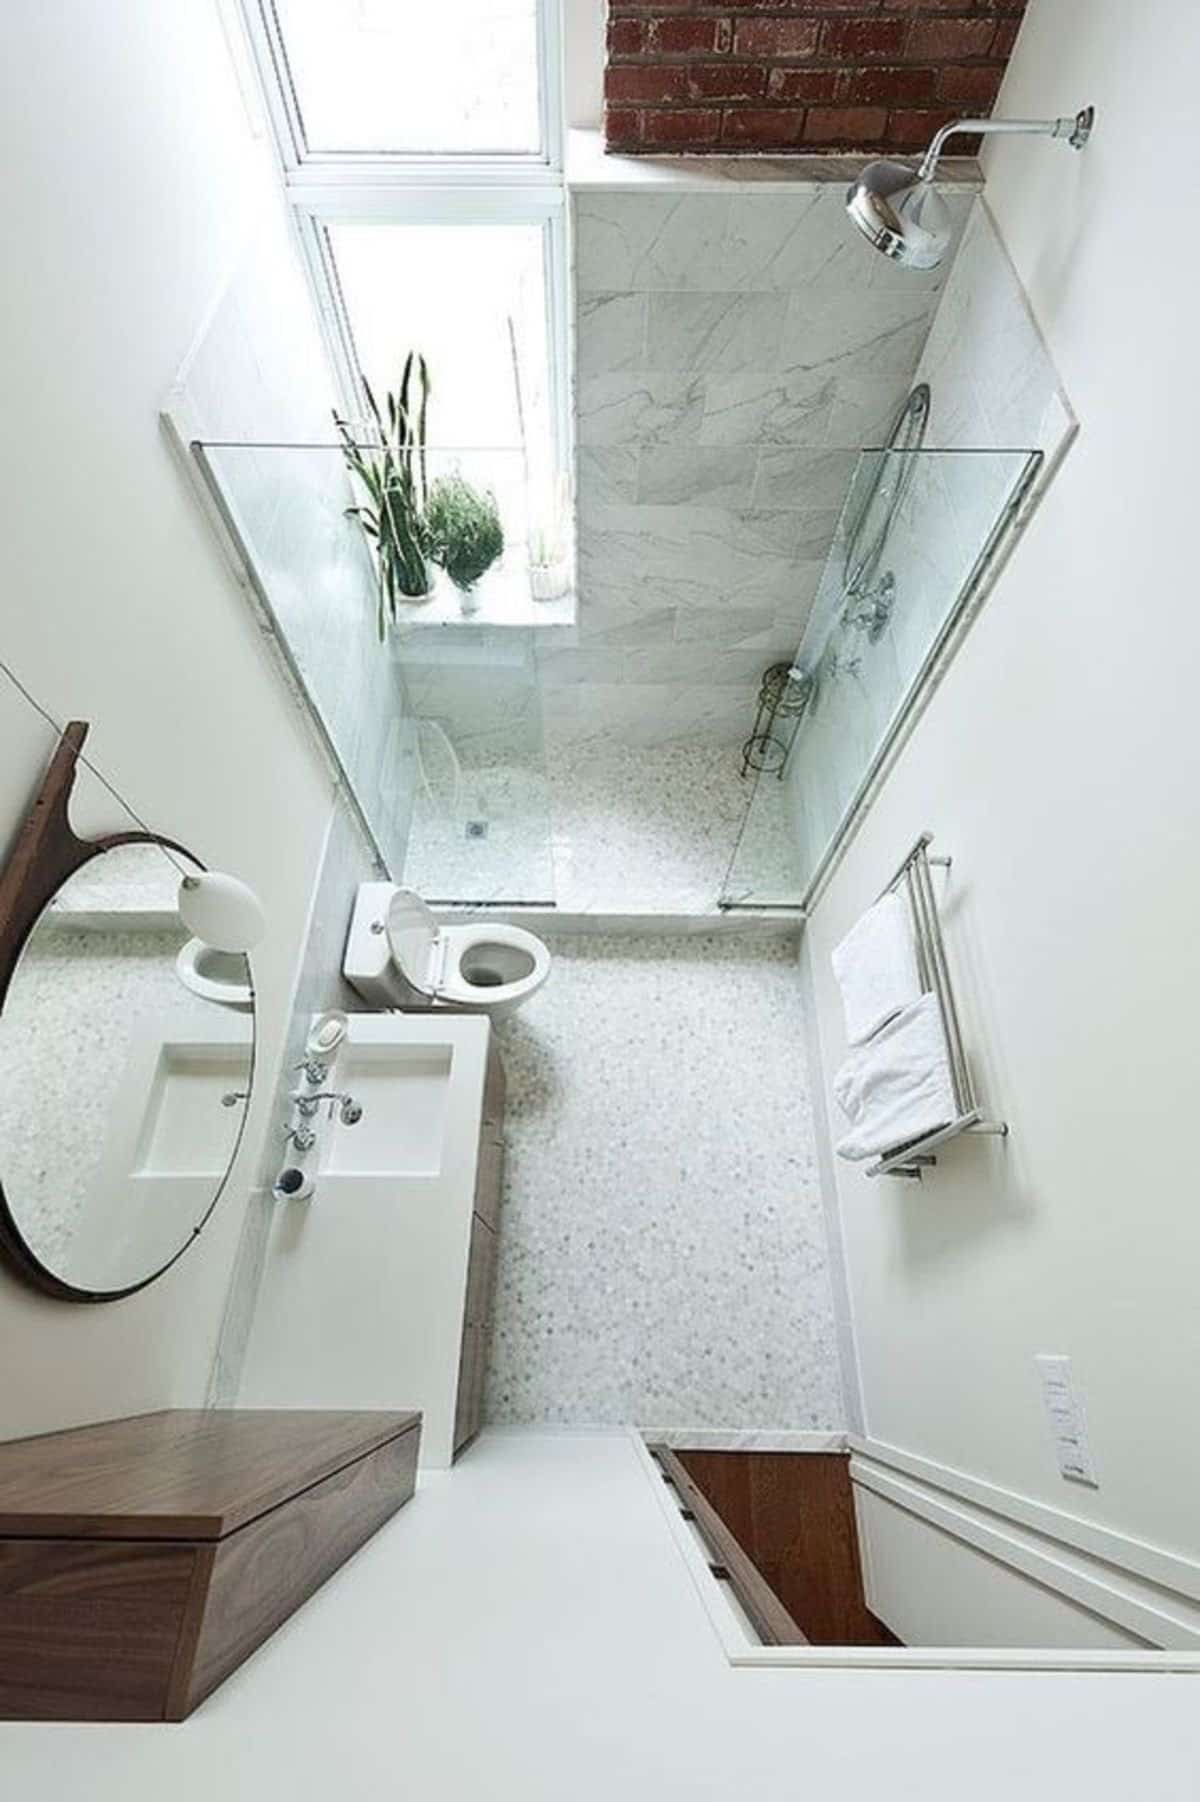 Thay thế cho mẫu bồn tắm nằm bình thường, thế vào đó, bạn có thể thiết kế đặt một mẫu bồn tắm đứng với vách kính gọn gàng, cho sàn nhà tắm luôn giữ được sự khô thoáng.